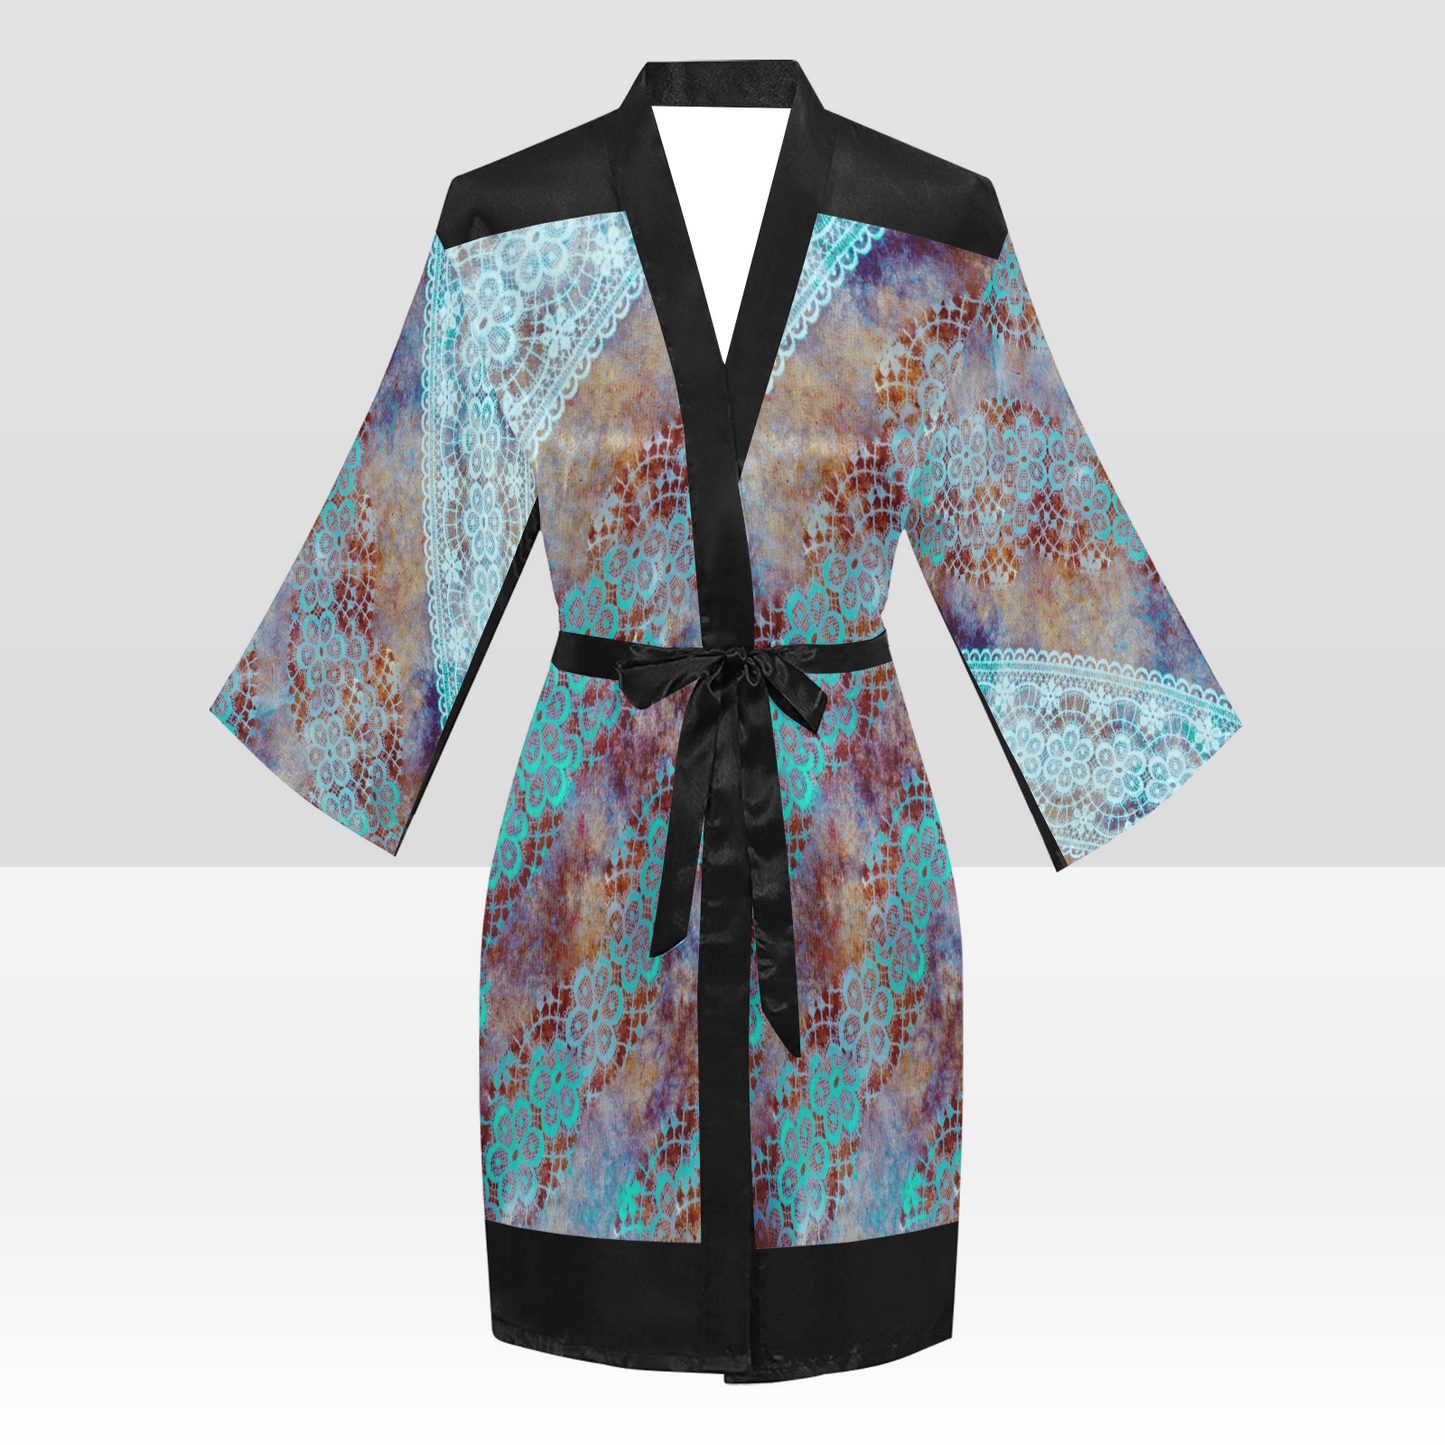 Victorian Lace Kimono Robe, Black or White Trim, Sizes XS to 2XL, Design 37